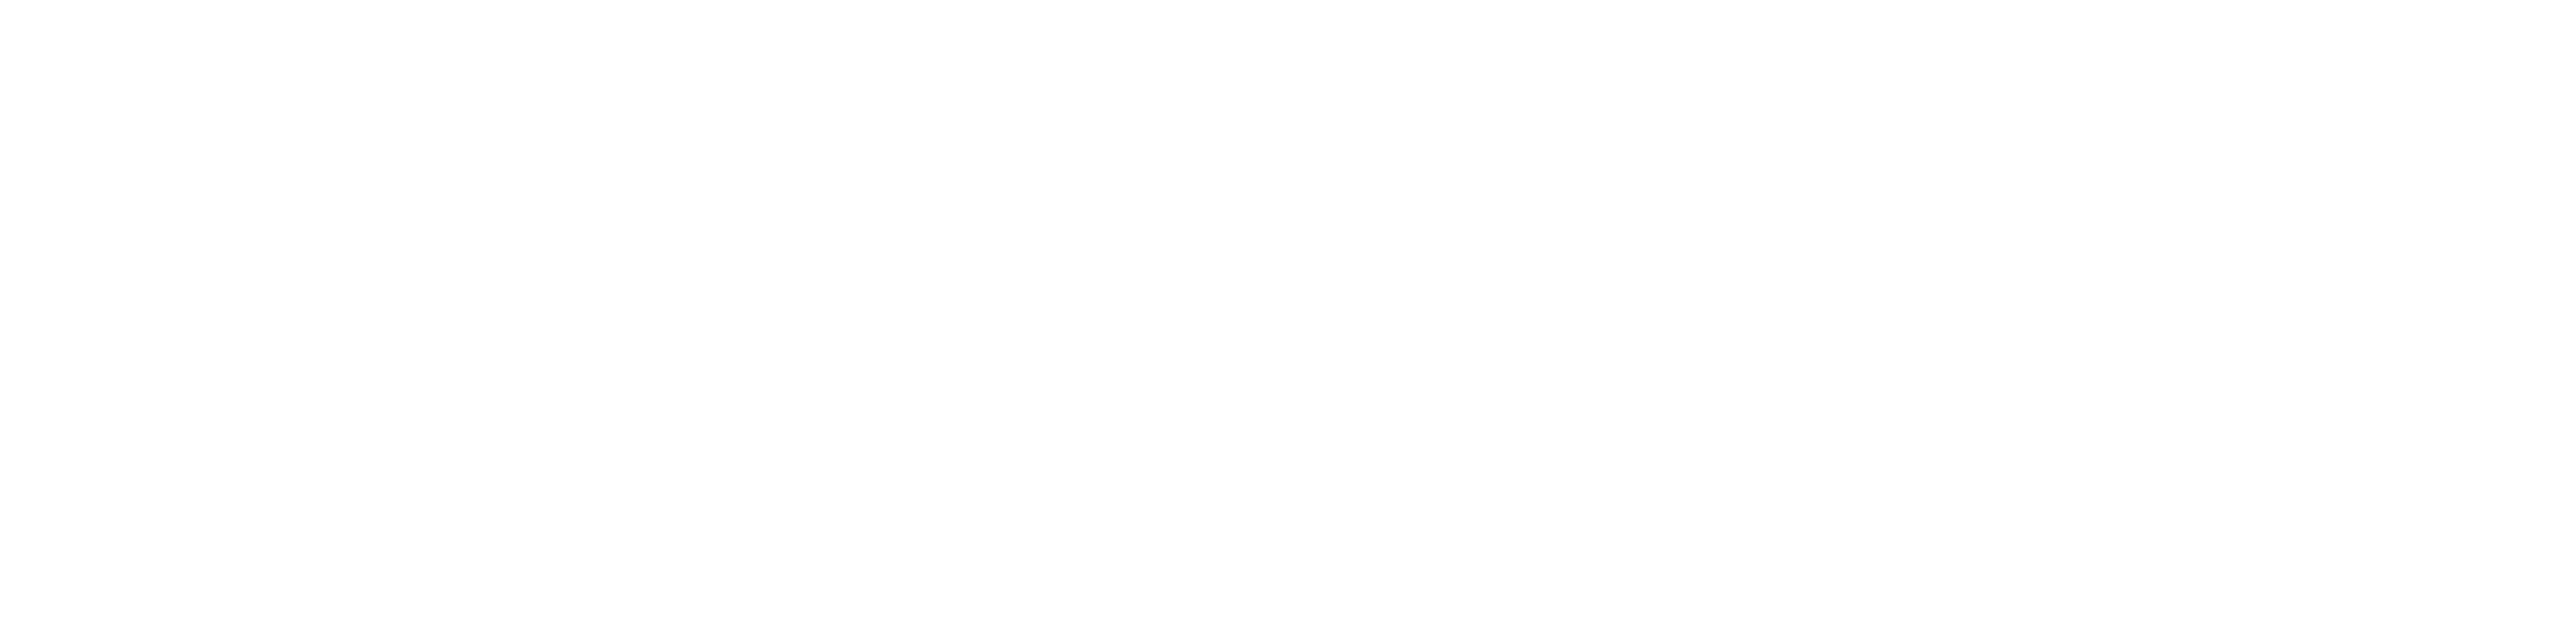 P&M-ਲੋਗੋ